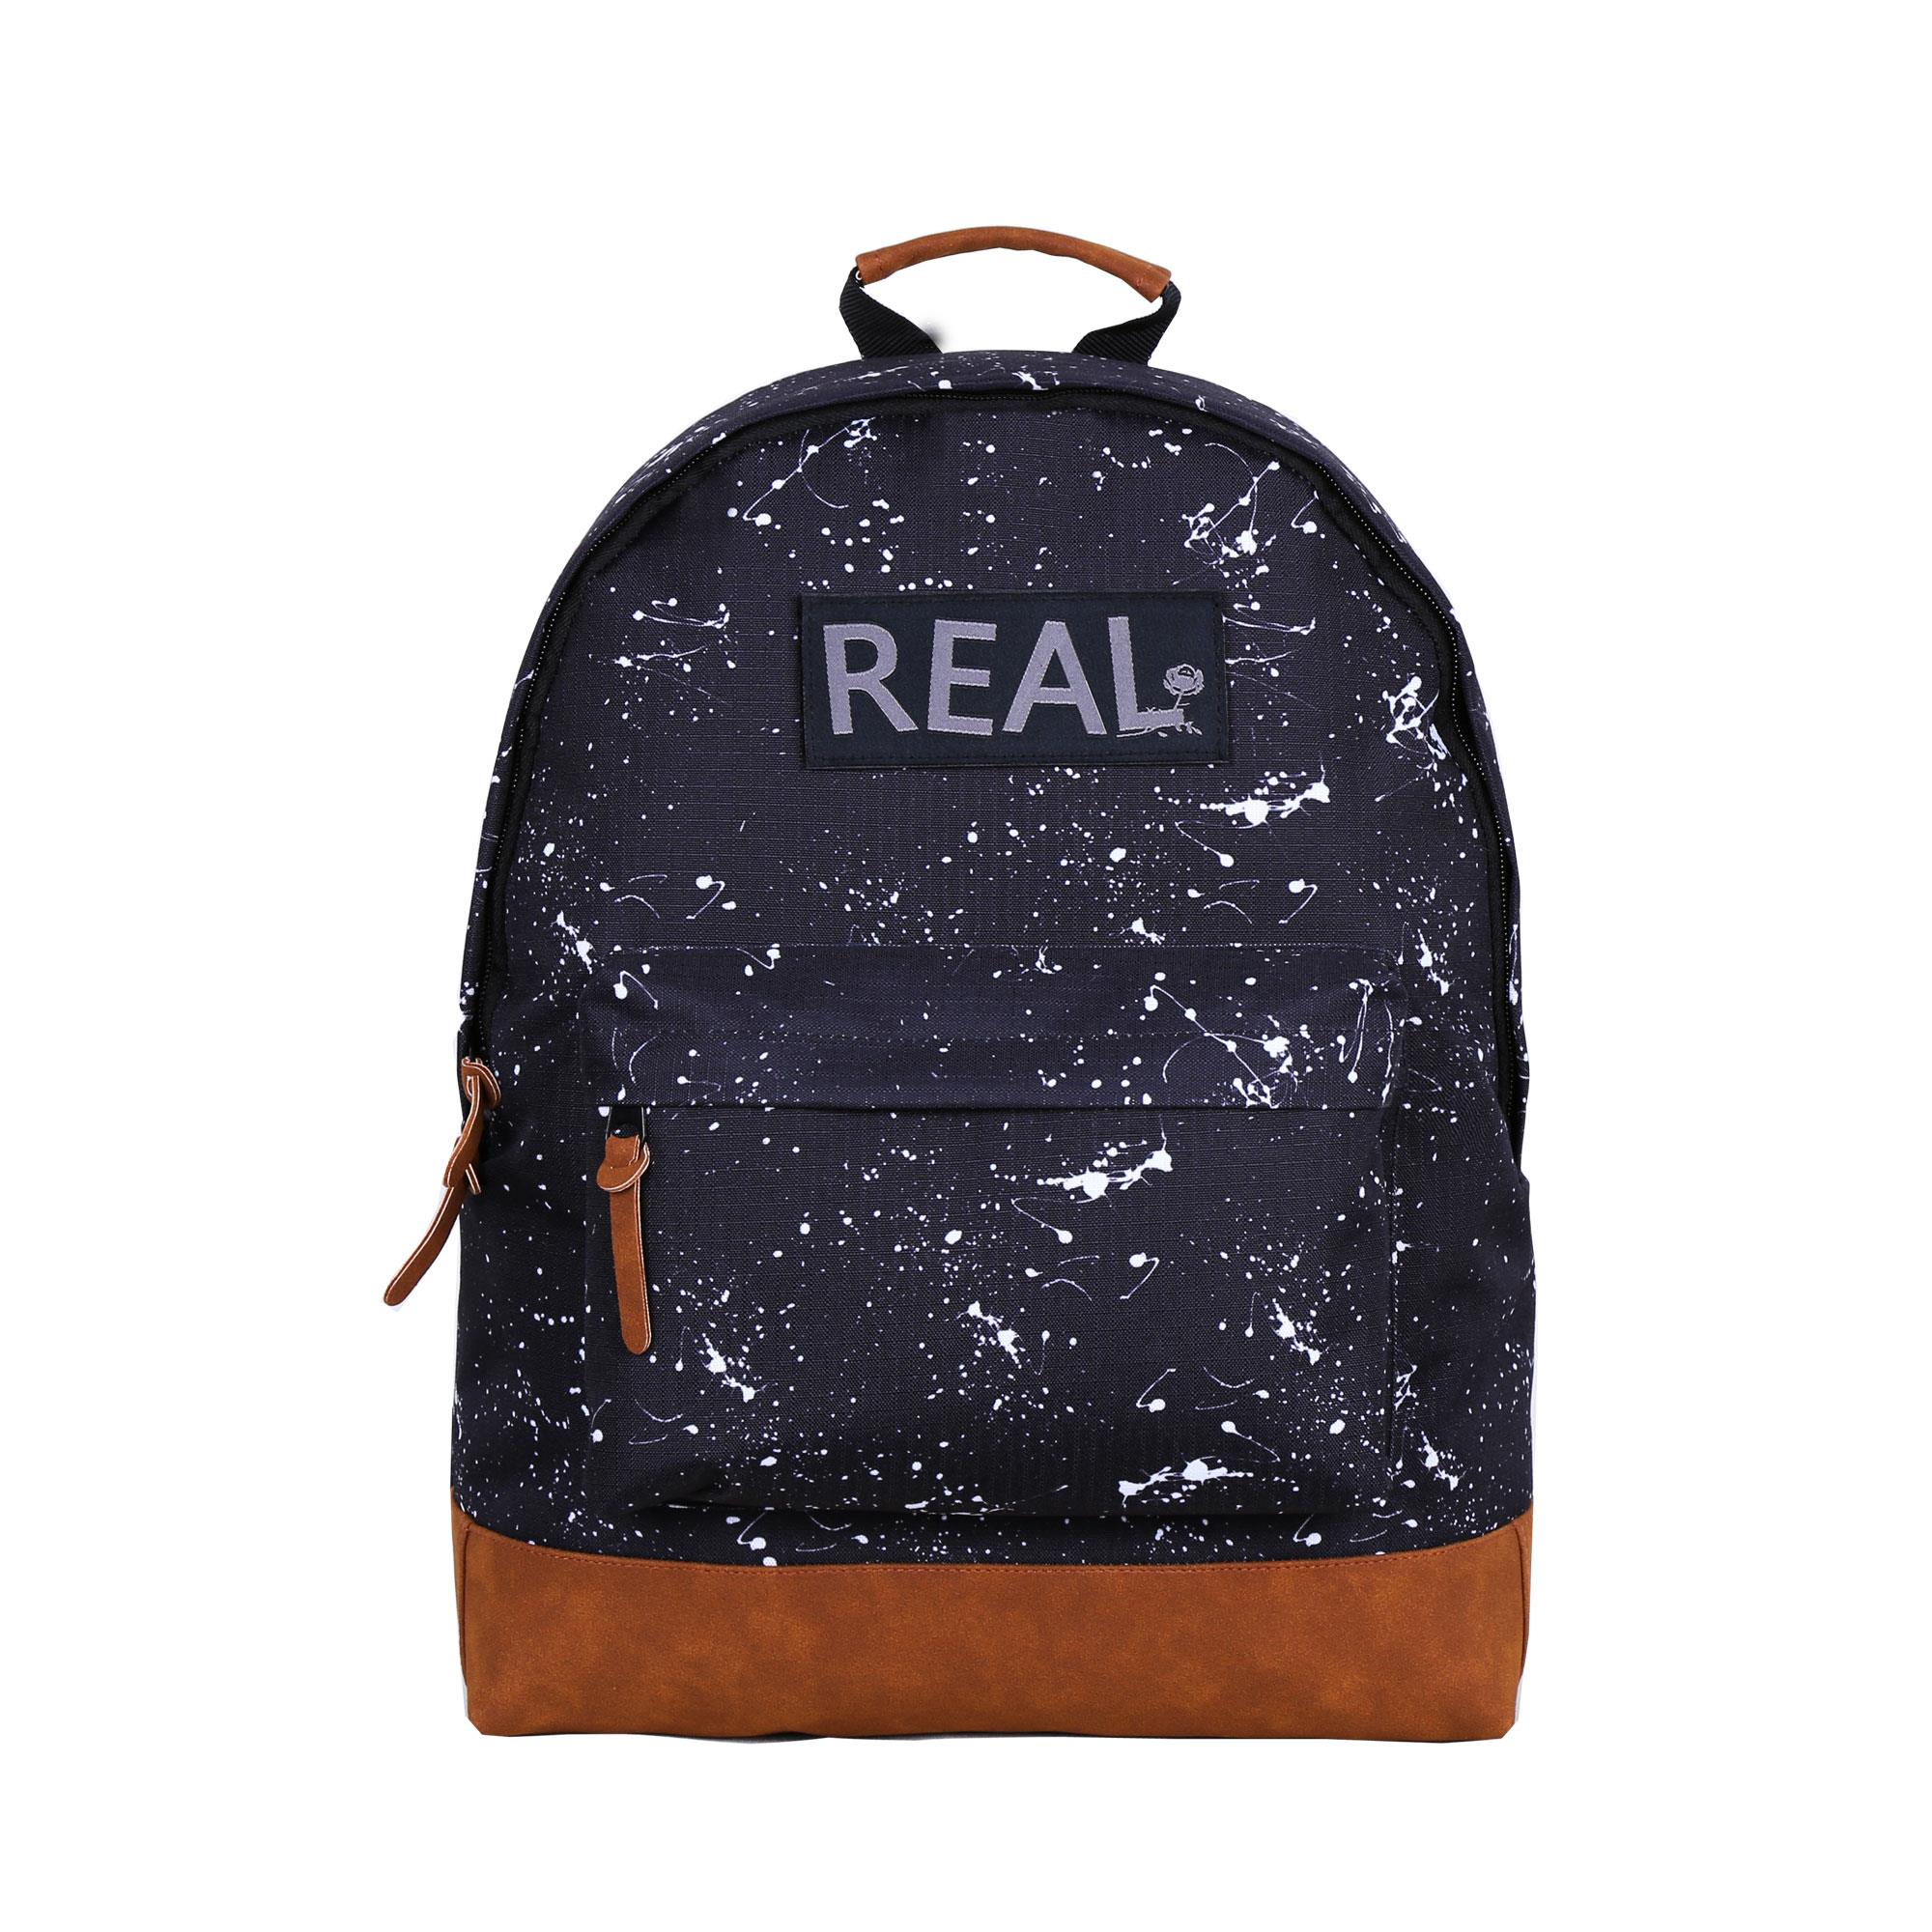 Factory wholesale Teenage Backpack Supplier -
 B1016-026 ELEGANT BACKPACK – Herbert